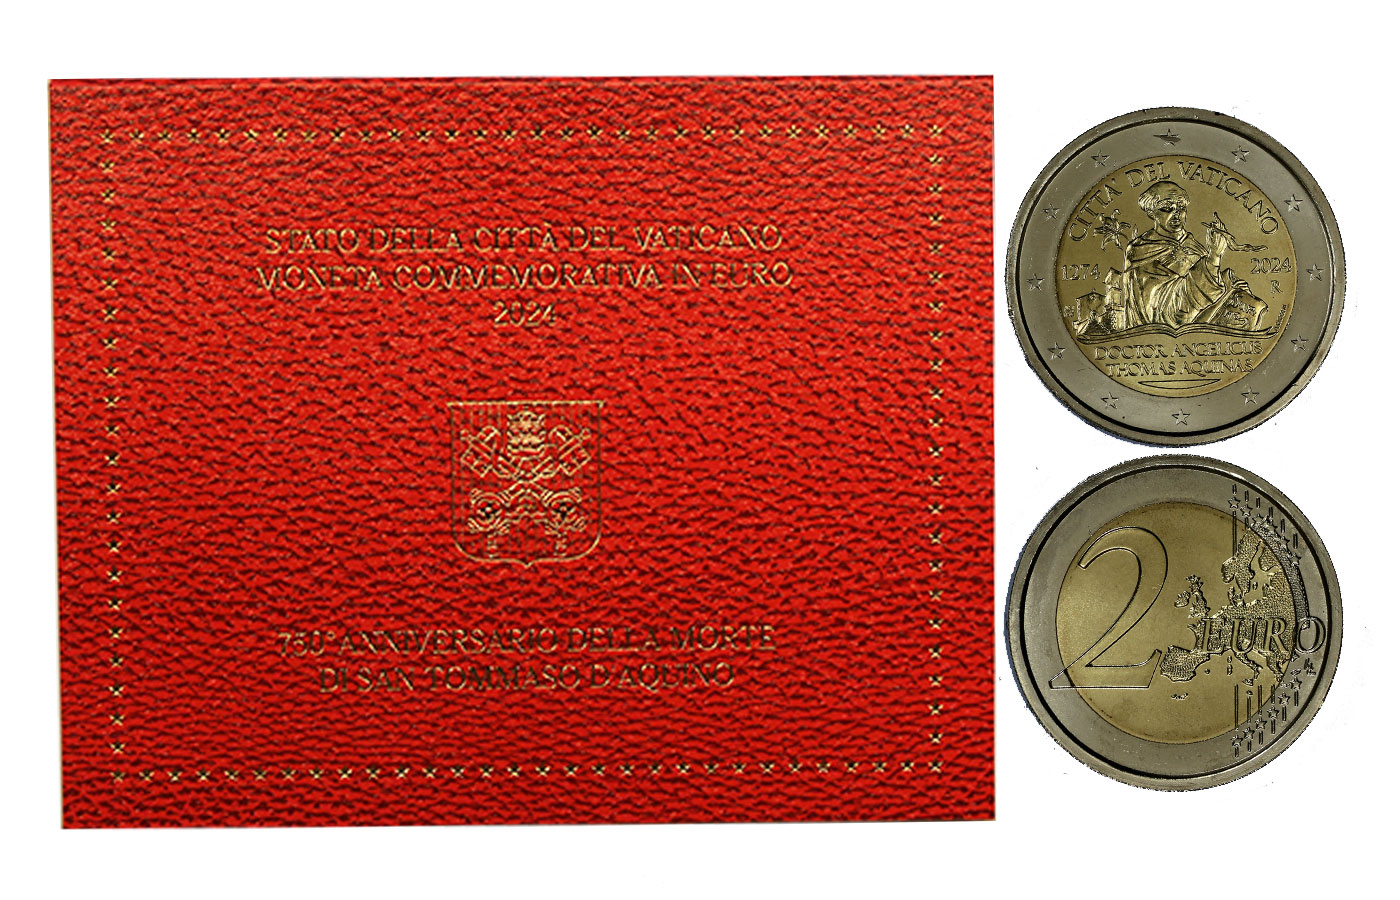 "750 Dalla scomparsa di San Tommaso d'Aquino" - 2 Euro - In coincard